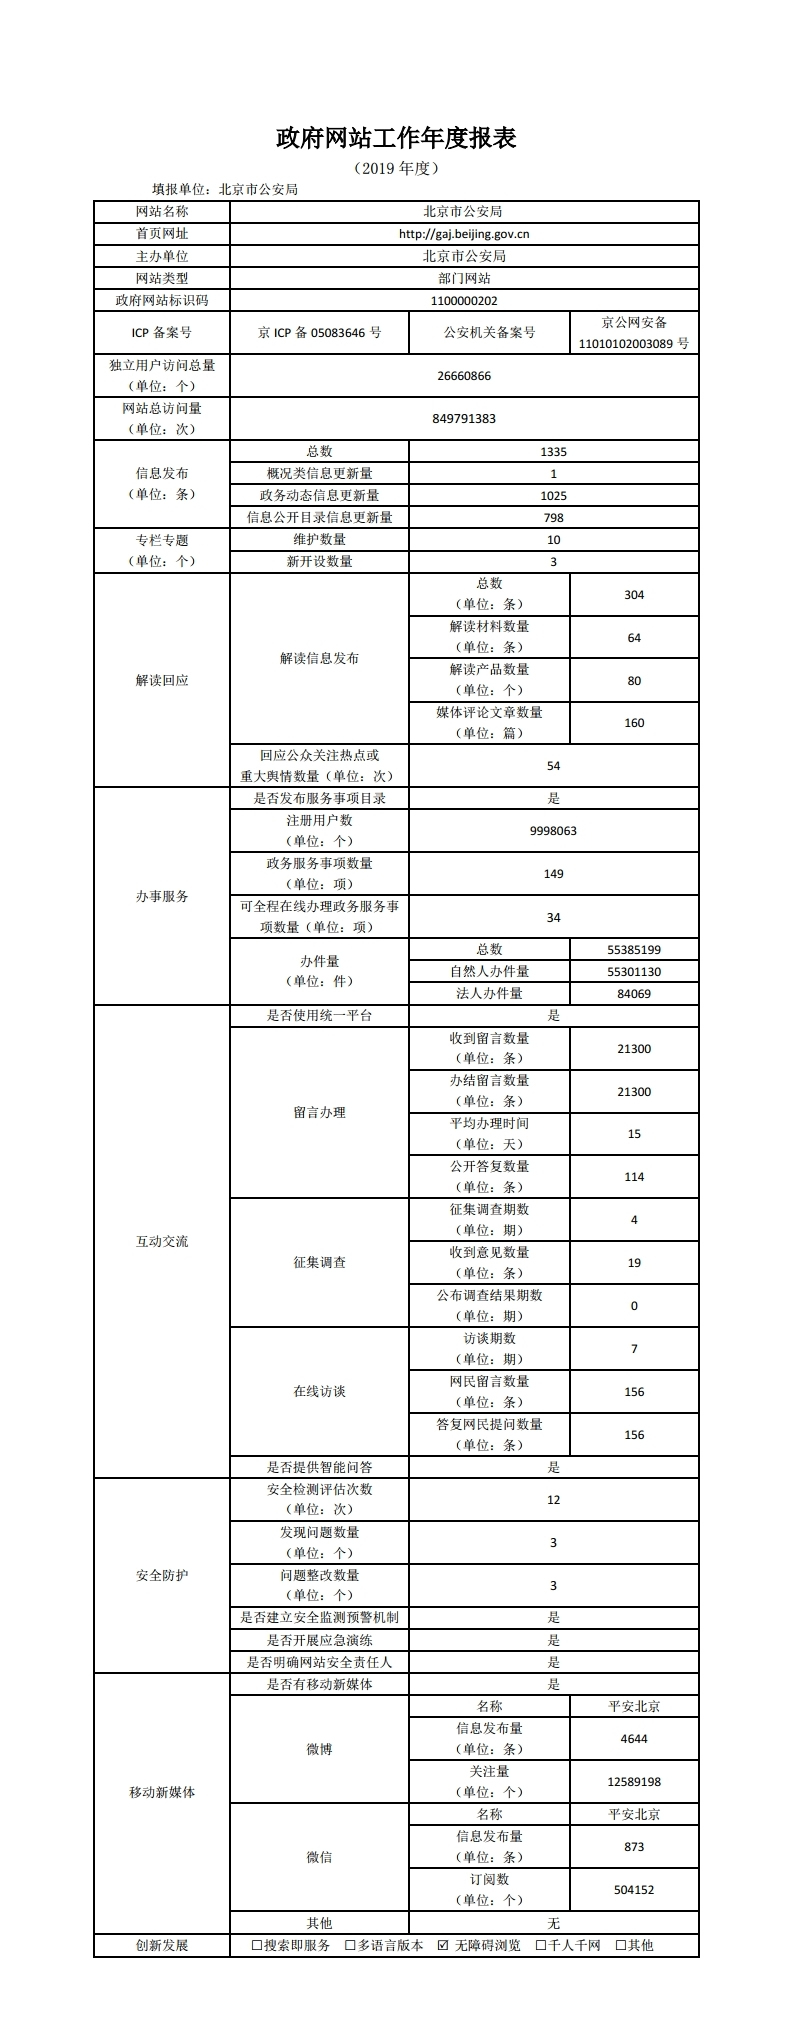 北京市公安局2019年政府網站年度工作報表